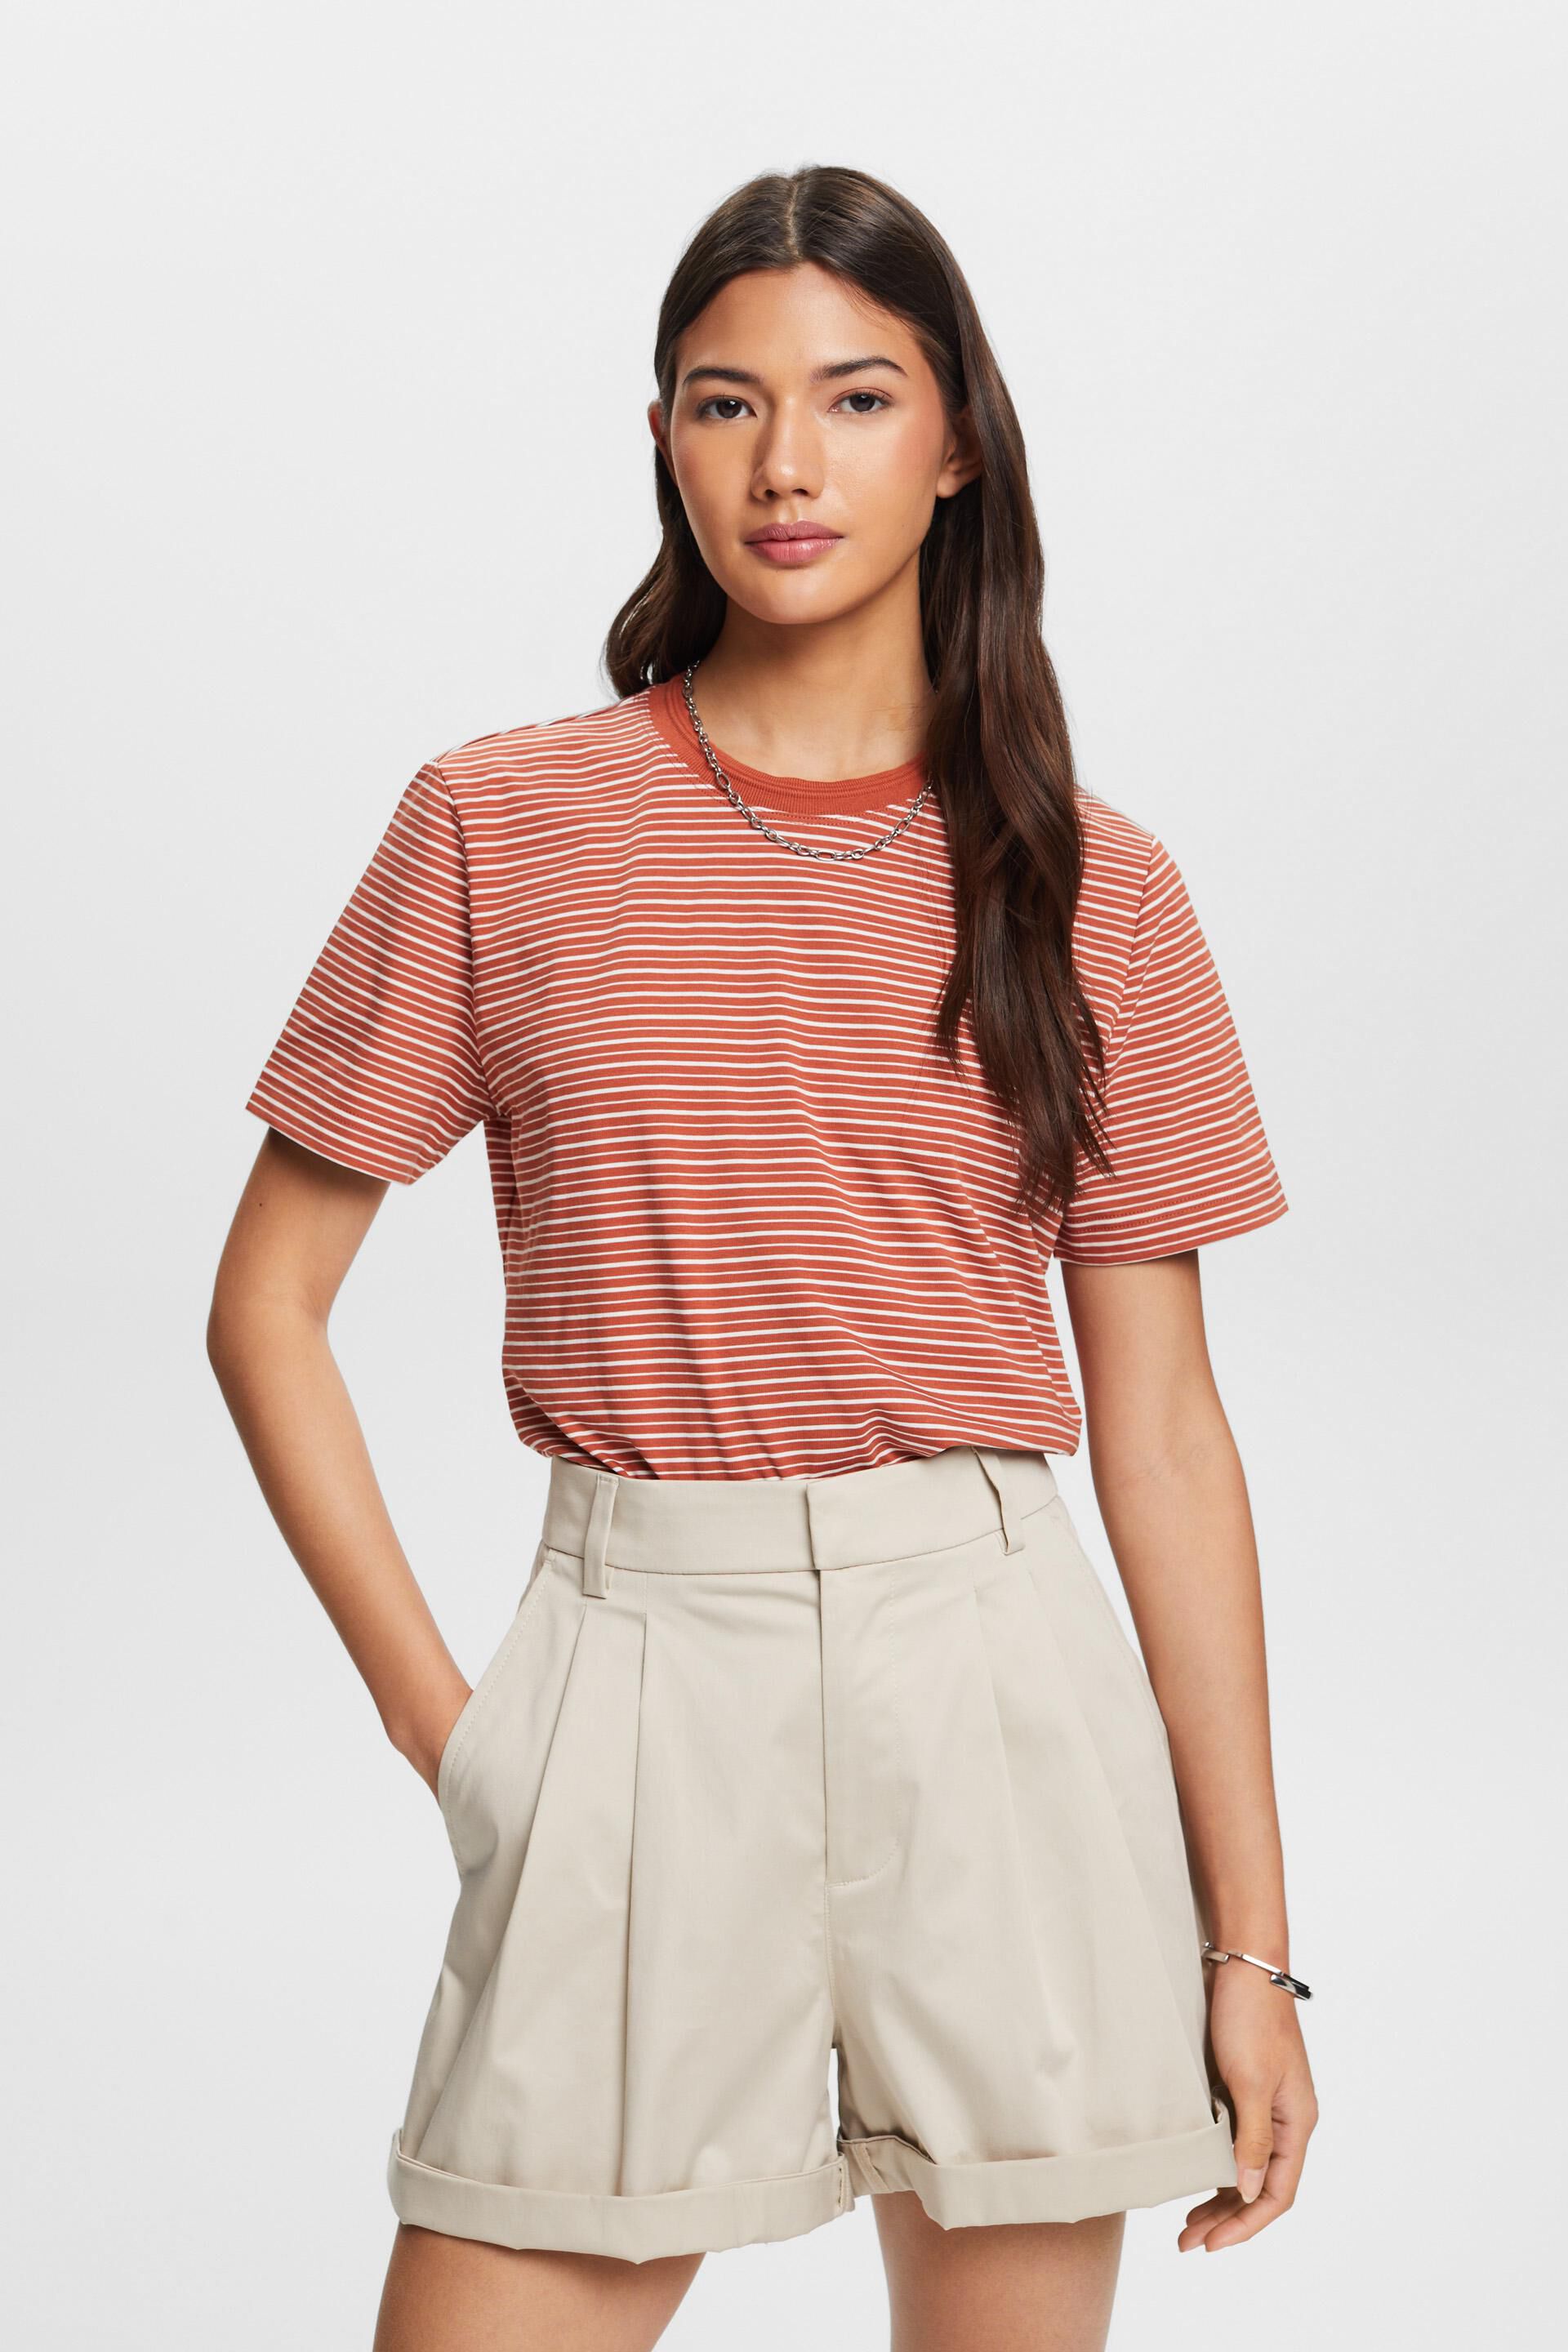 Esprit cotton T-shirt, Striped 100%